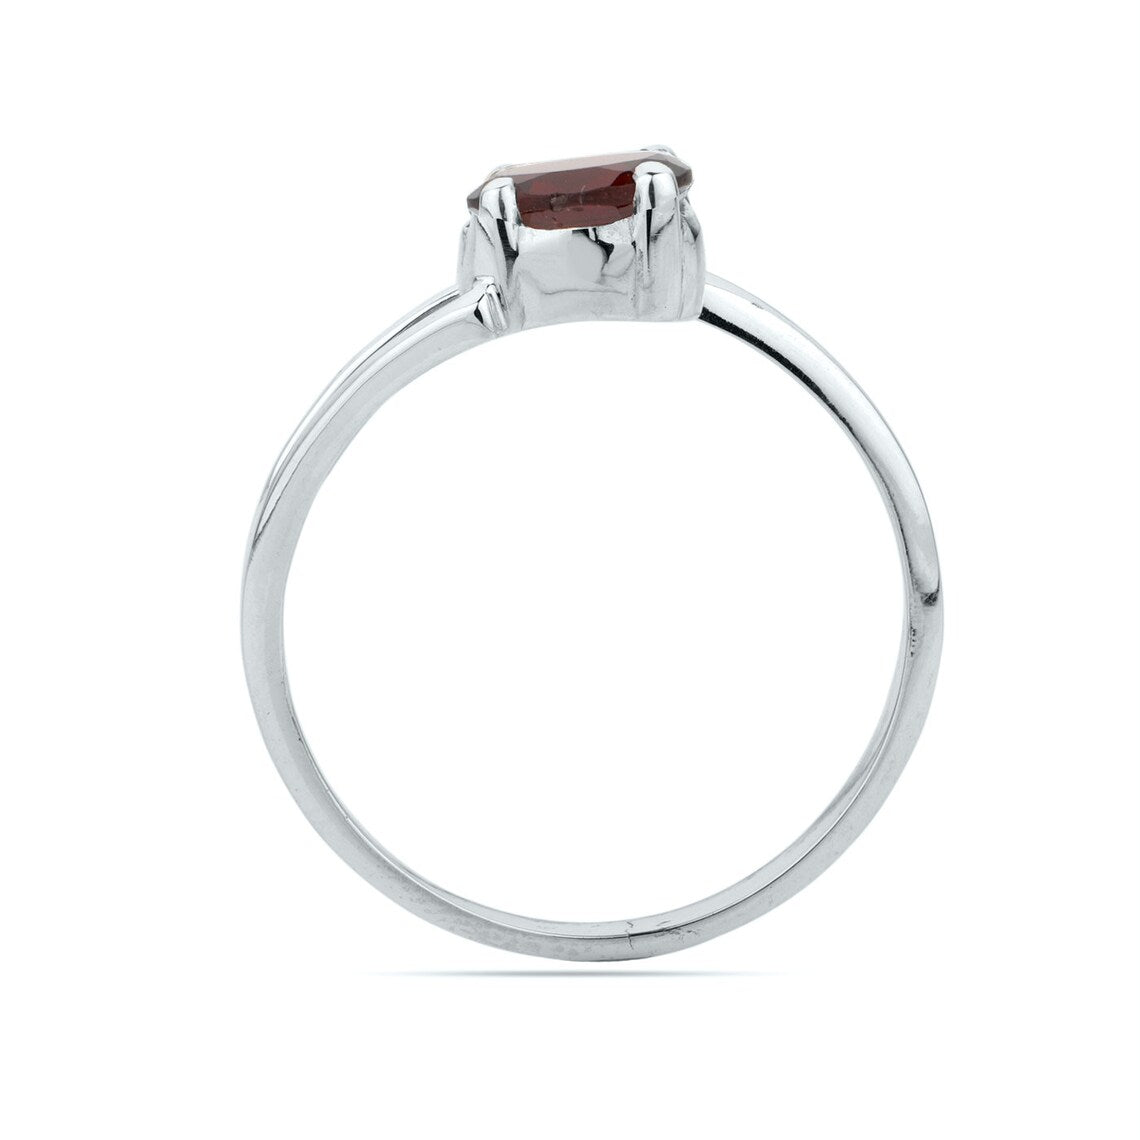 Natural Red Garnet Ring - Oval Garnet Ring-Handmade Silver Ring-Gift For Her-Promise Ring -Birthstone Ring